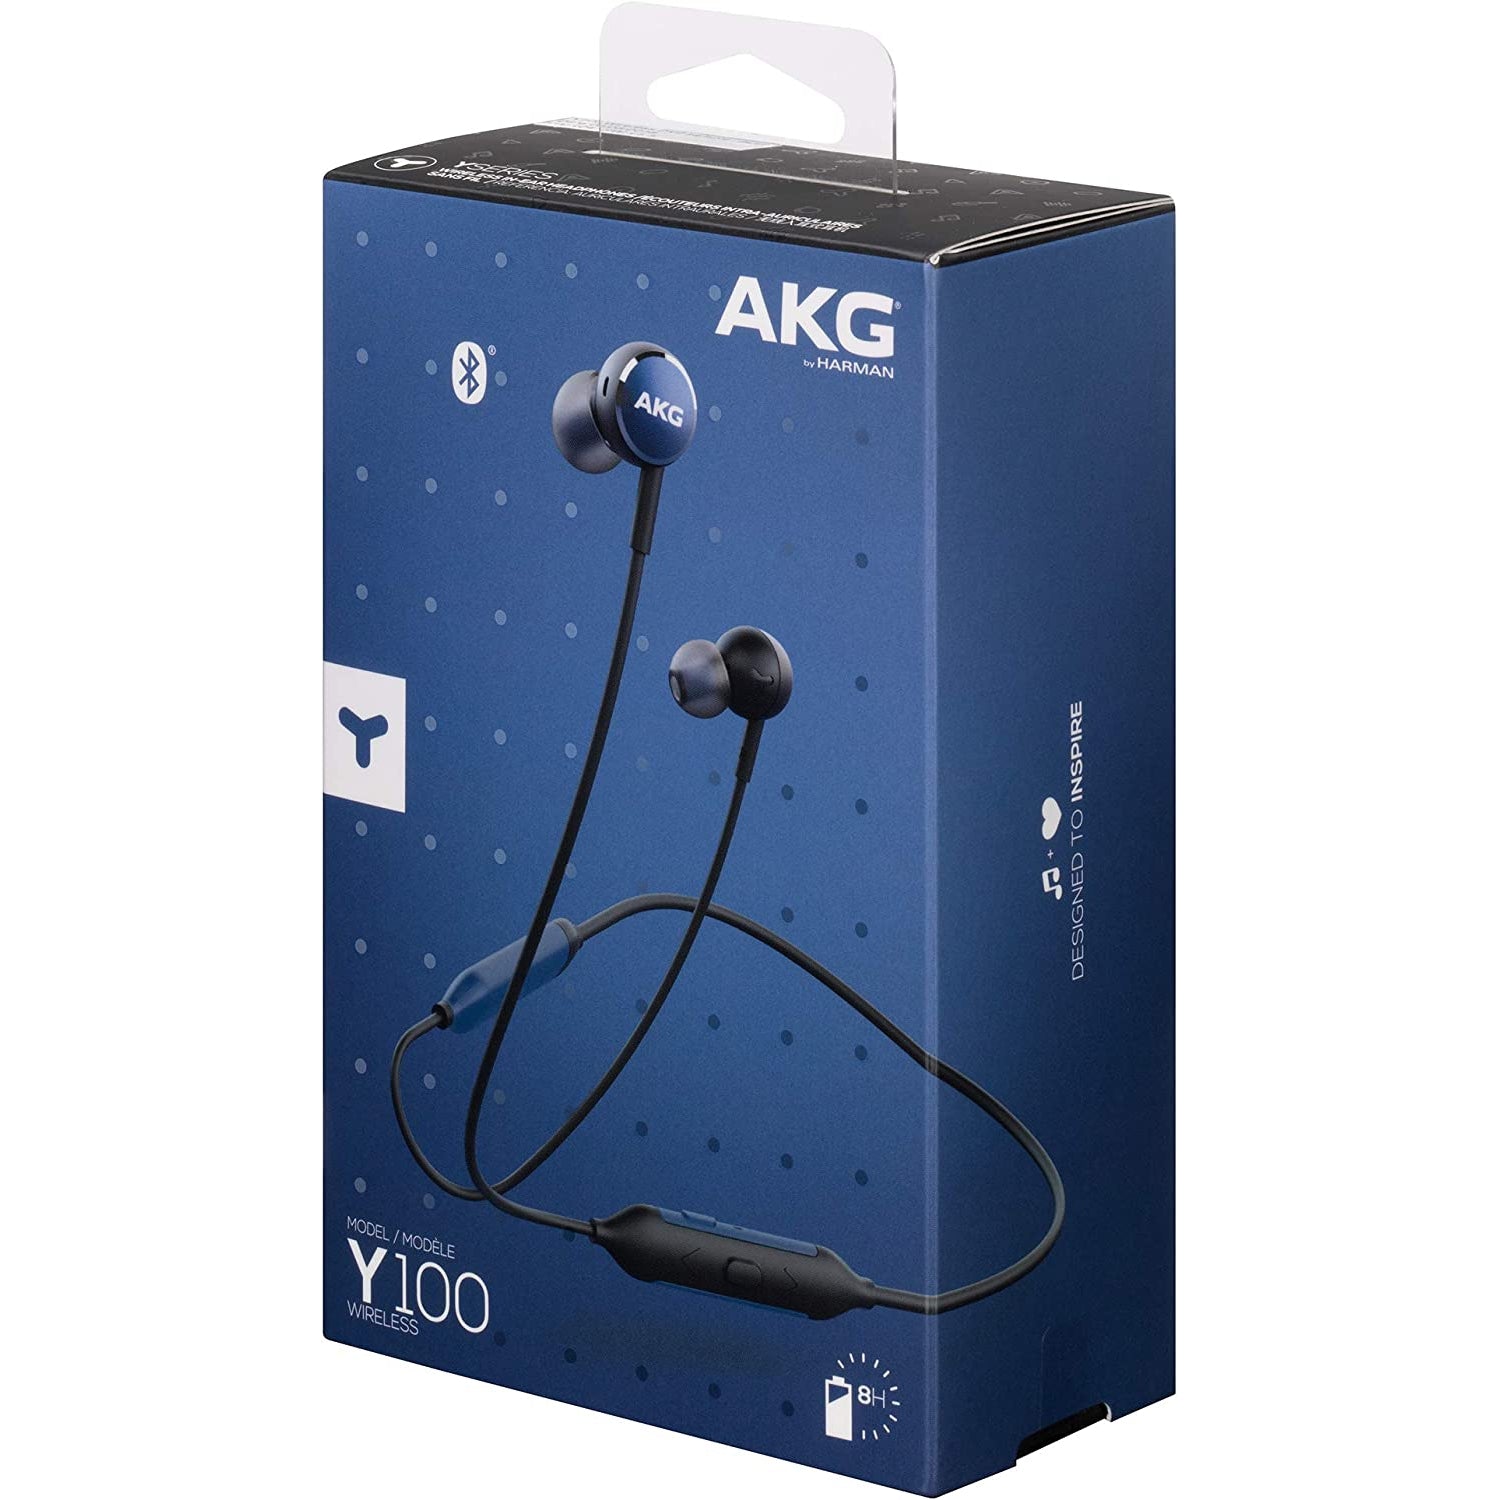 AKG Y100 Wireless In-Ear Headphones - Blue - Refurbished Good